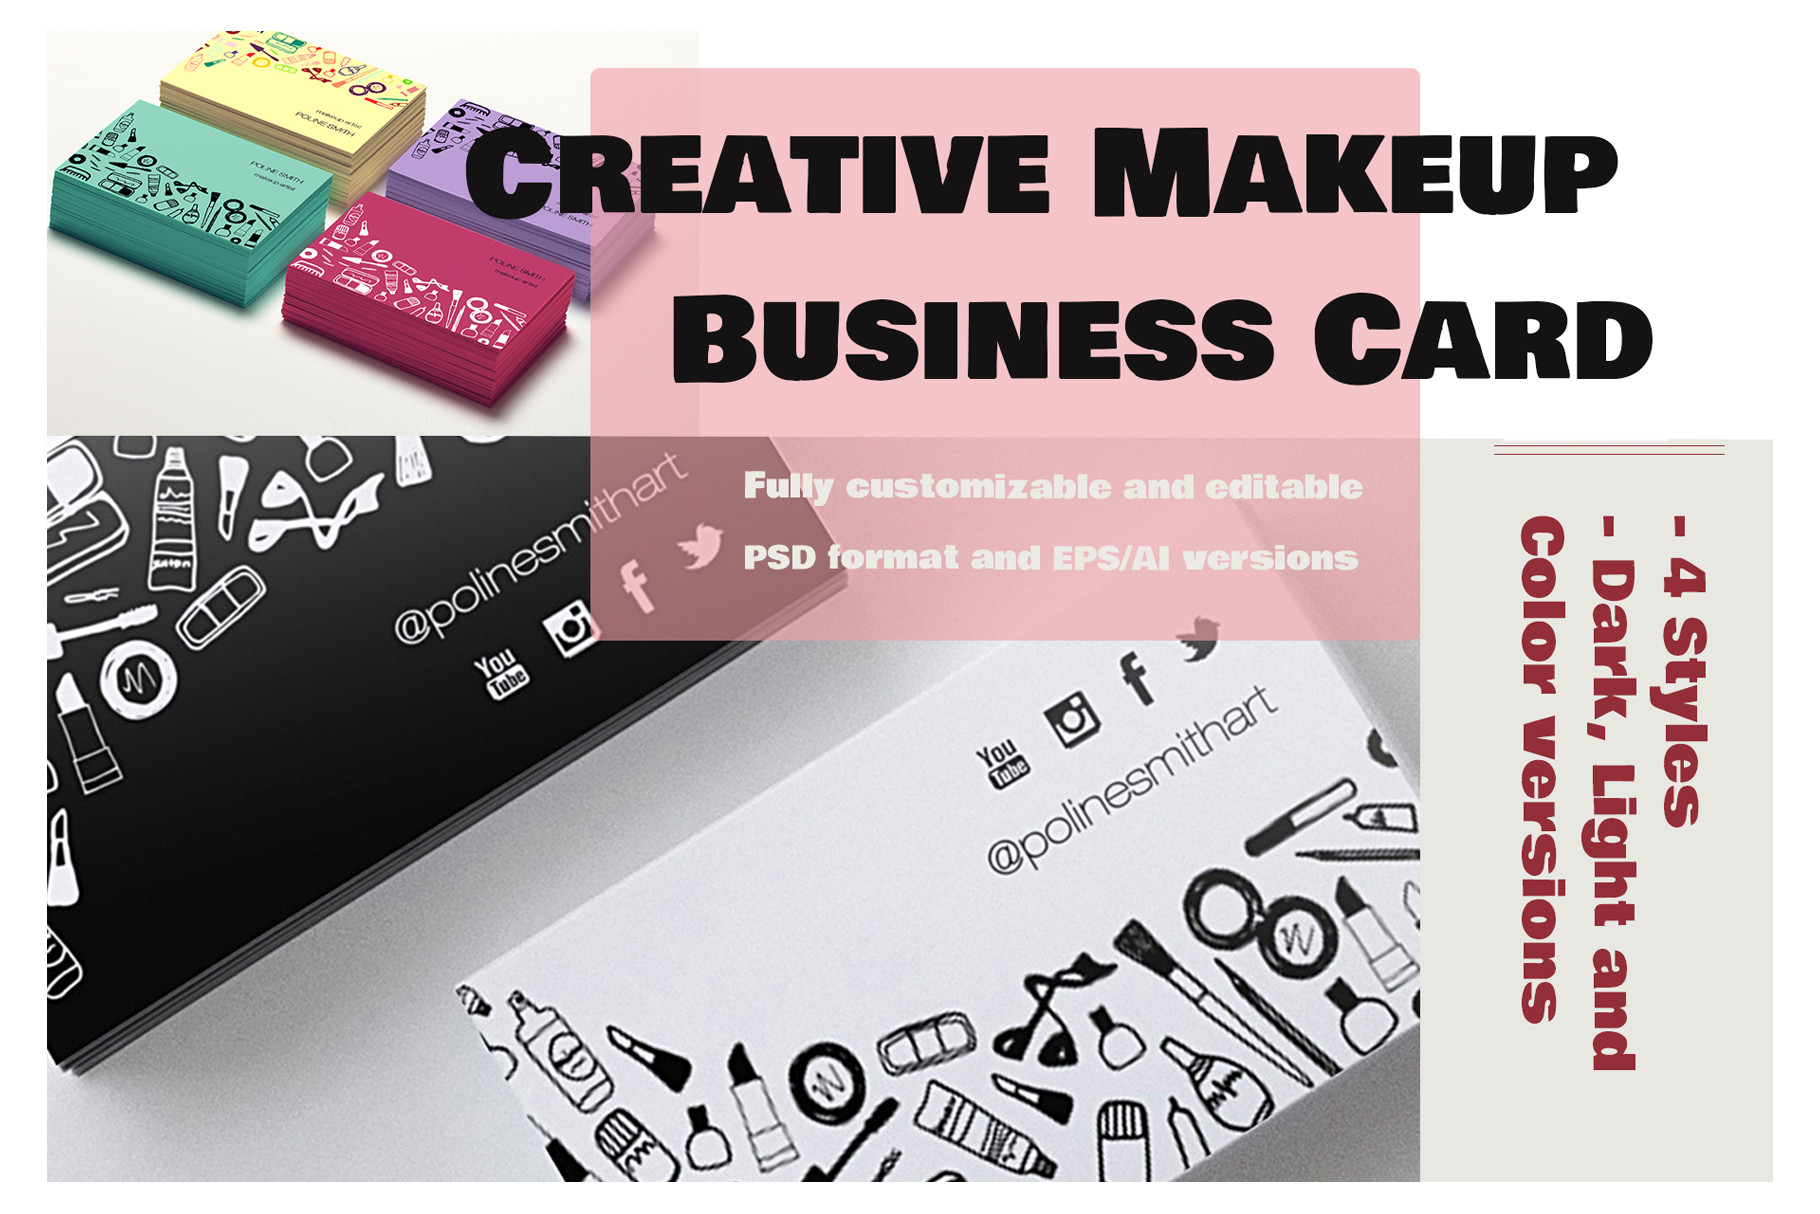 Creative Makeup Business Card Of Business Cards Templates Ai